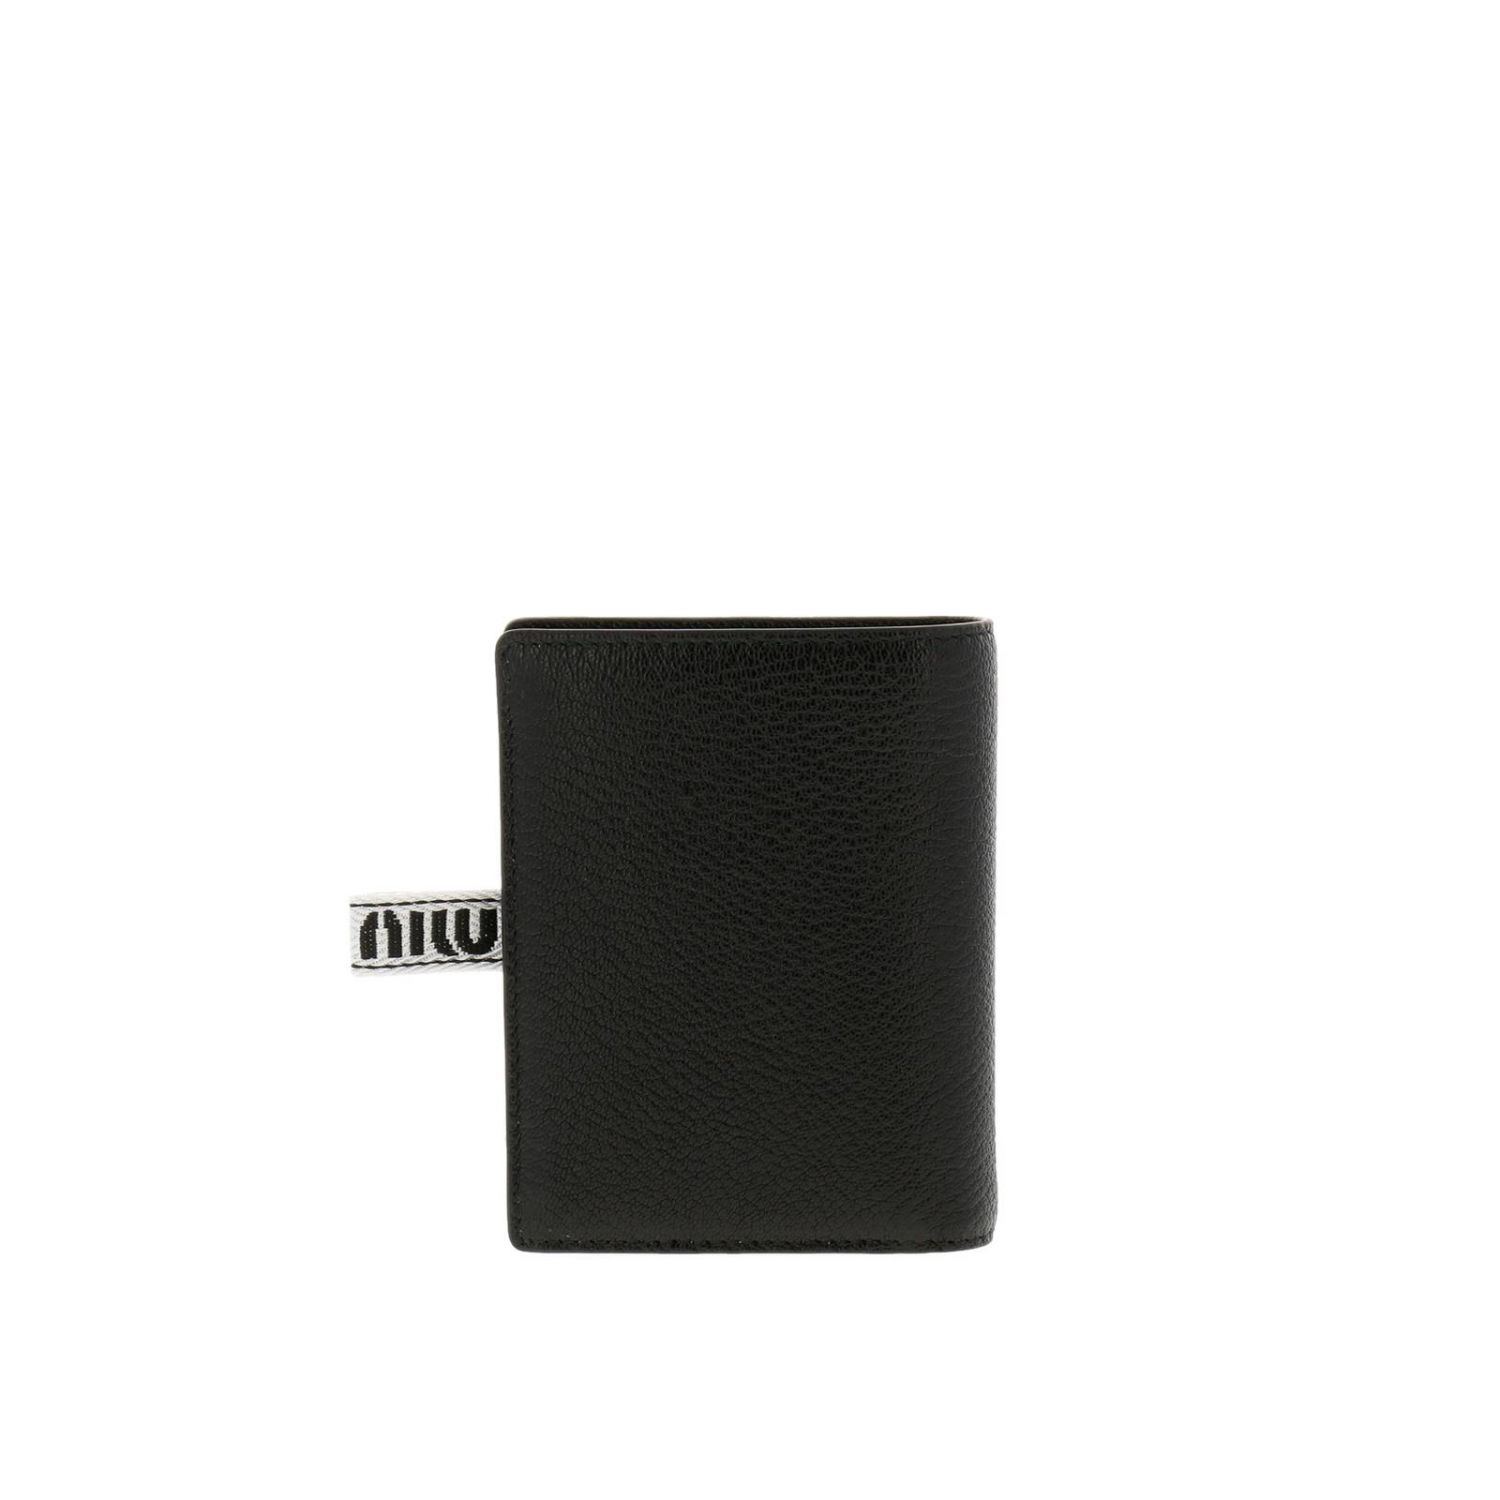 MIU MIU: Wallet women - Black | Wallet Miu Miu 5MV204 2B64 GIGLIO.COM